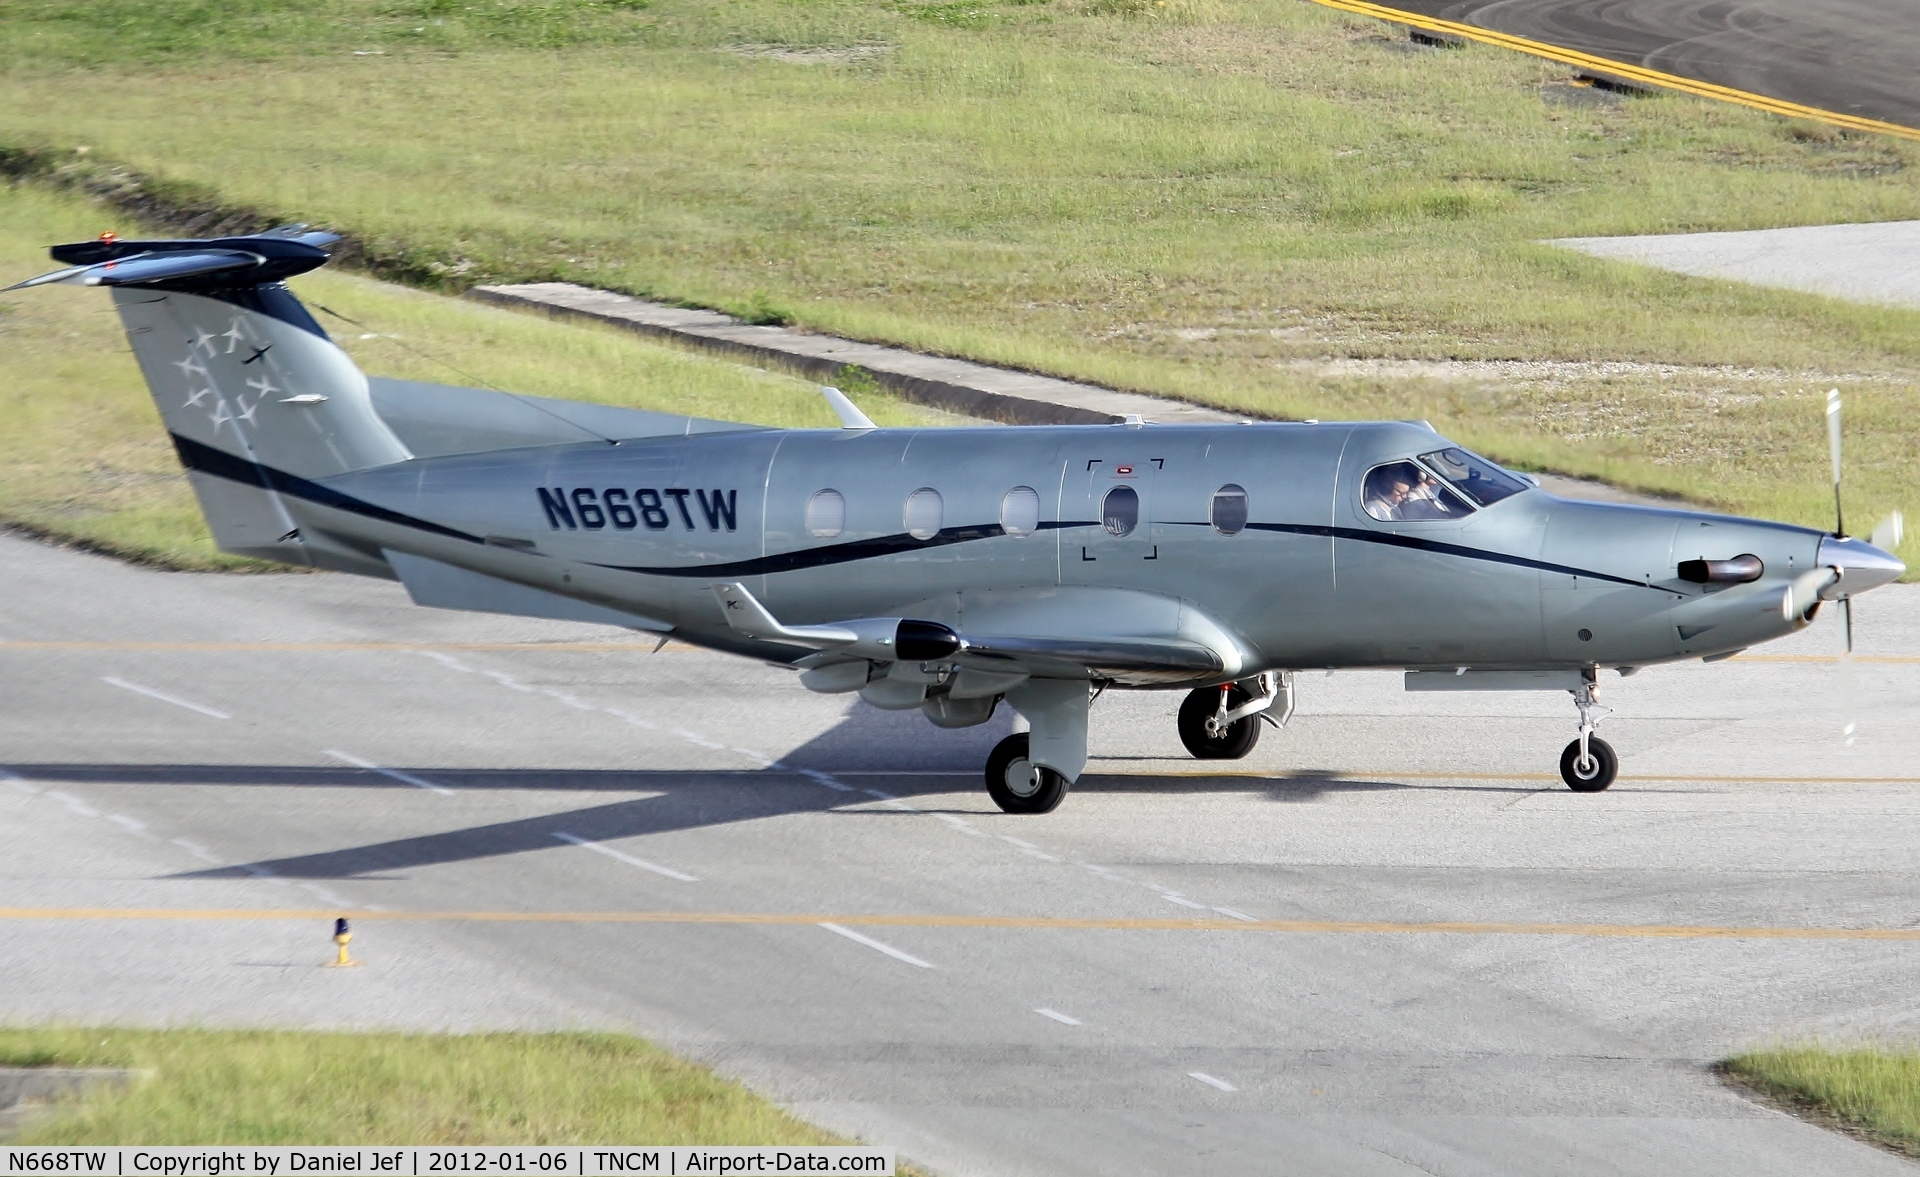 N668TW, 2000 Pilatus PC-12/45 C/N 326, N668TW